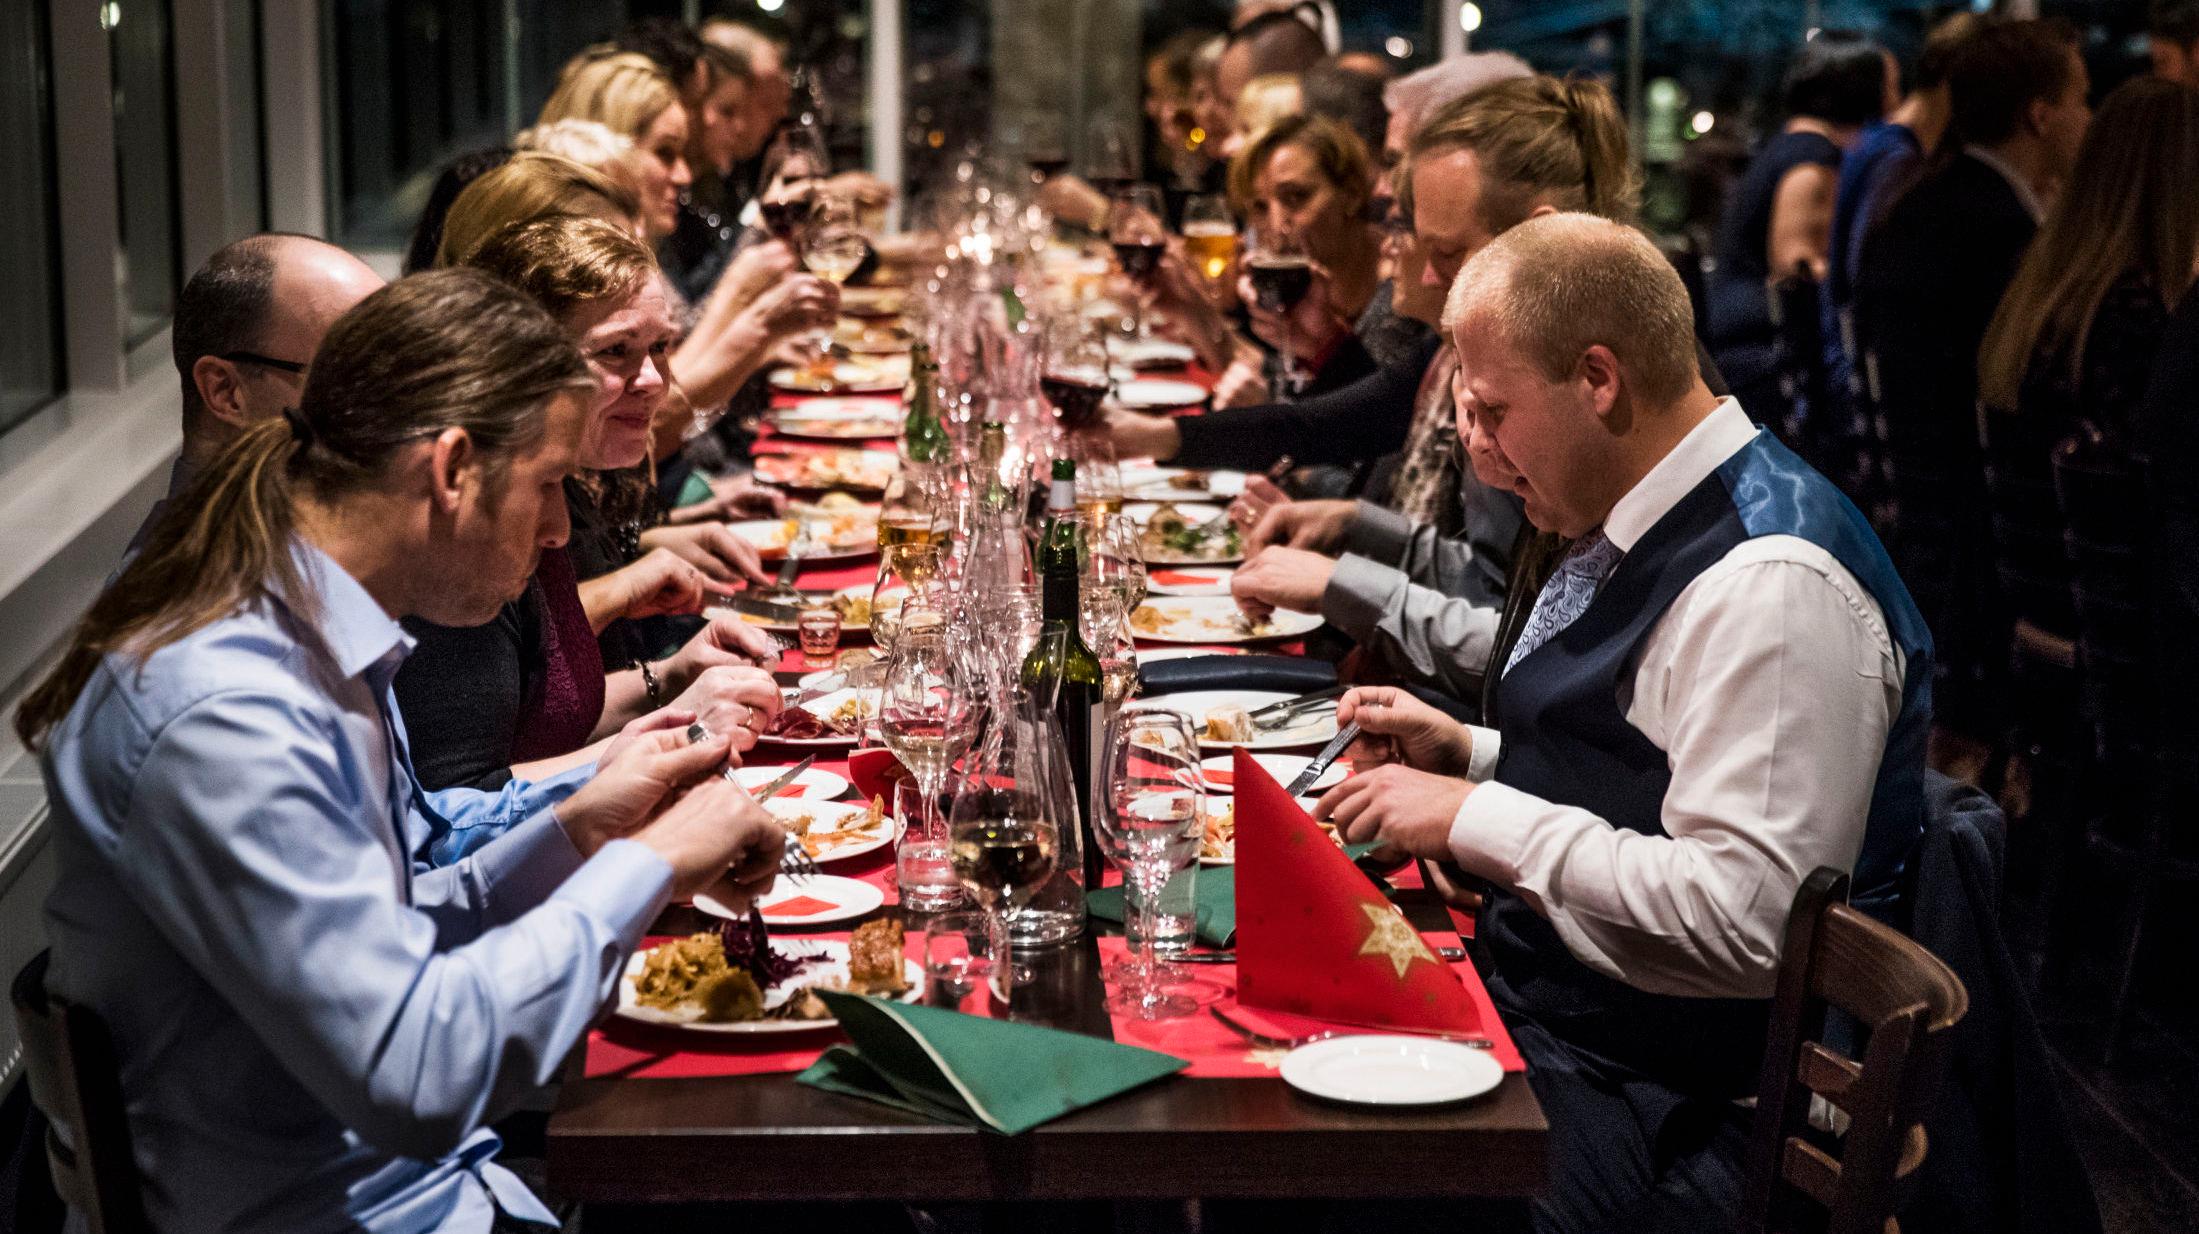 EN GOD FEST: Man spiser seg god og mett på julebordet, og levende musikk lager god musikk i selskapslokalet. Foto: Frode Hansen.